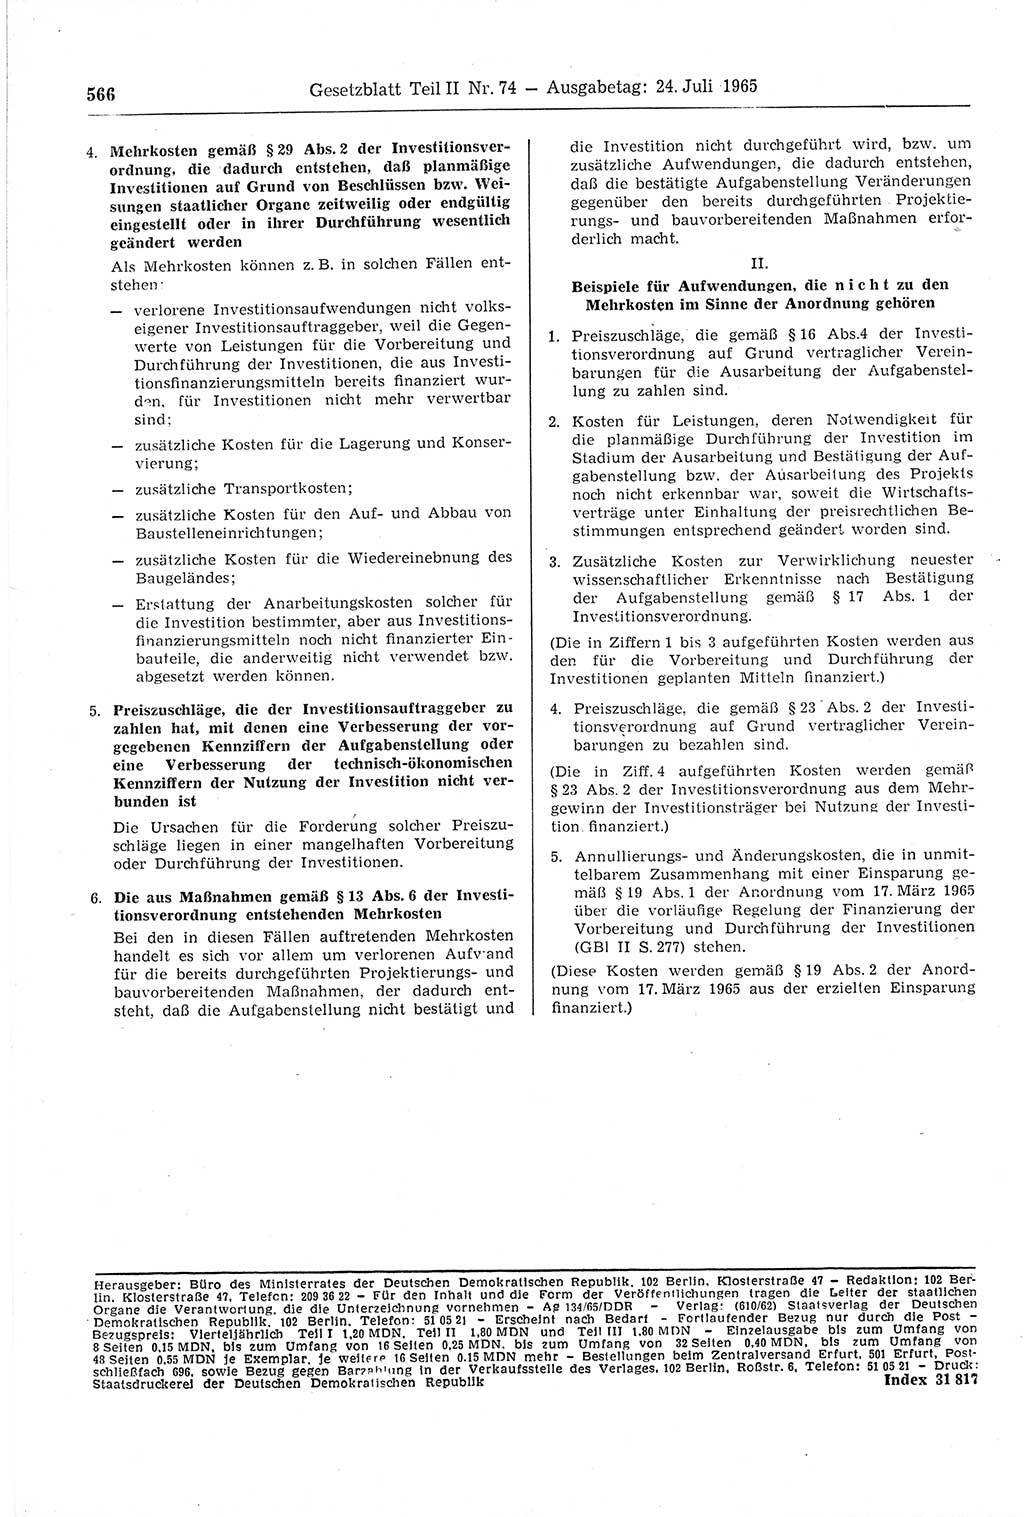 Gesetzblatt (GBl.) der Deutschen Demokratischen Republik (DDR) Teil ⅠⅠ 1965, Seite 566 (GBl. DDR ⅠⅠ 1965, S. 566)